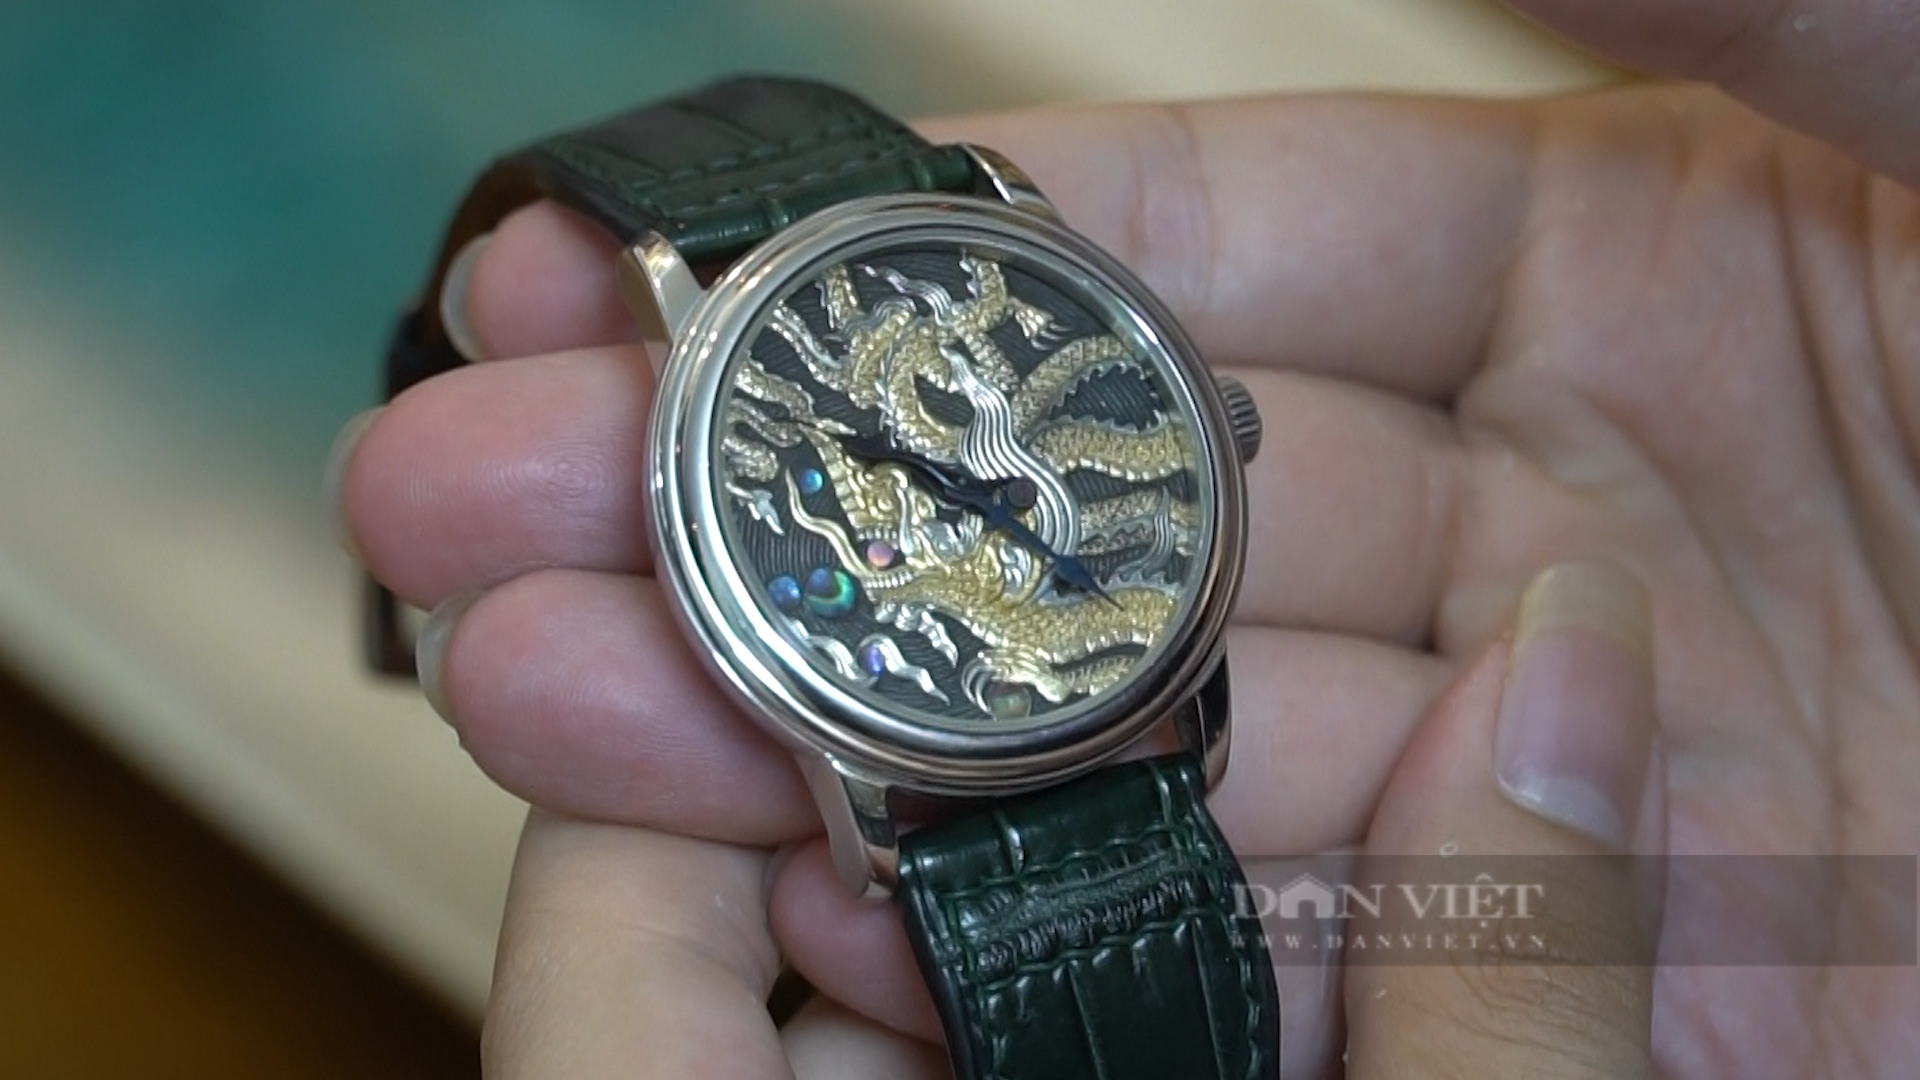 Anh Chiến mất 2 tháng chạm khắc chiếc đồng hồ “Long Hý Châu” với sự kết hợp của nhiều vật liệu như bạc 925, khảm vàng 24k, vỏ bào ngư…. Ảnh: Trung Hiếu